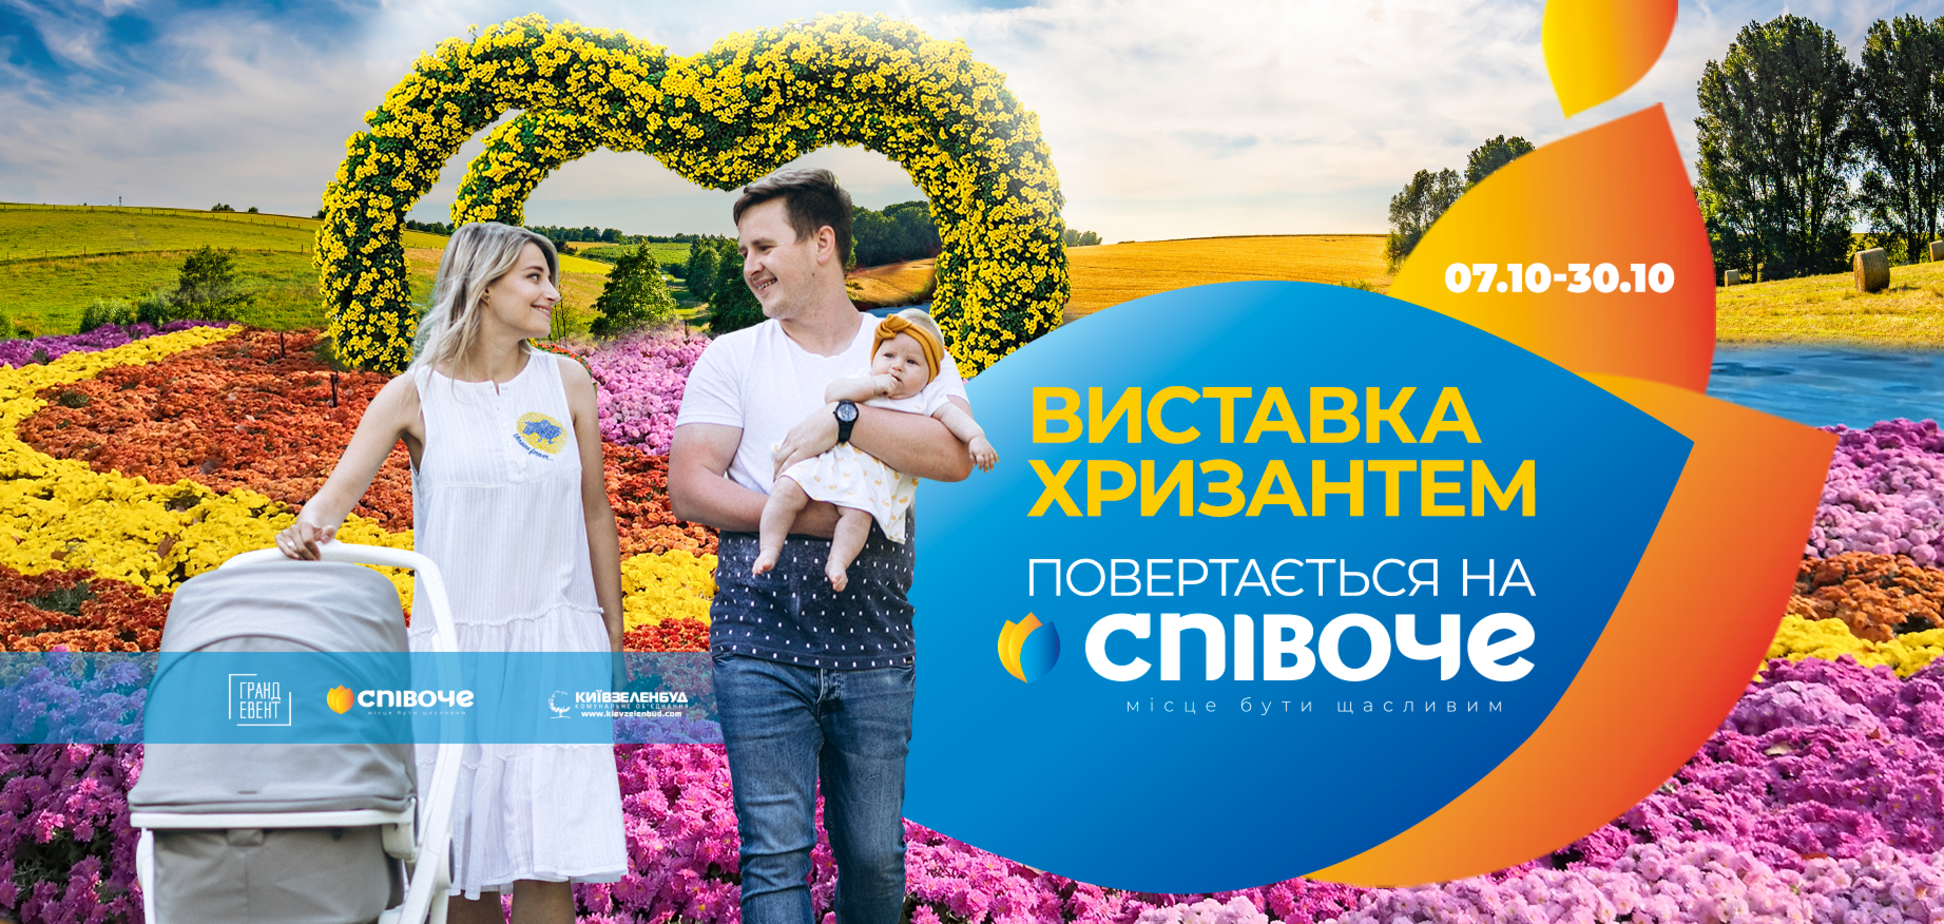 В Киеве на Певческом поле откроется выставка хризантем